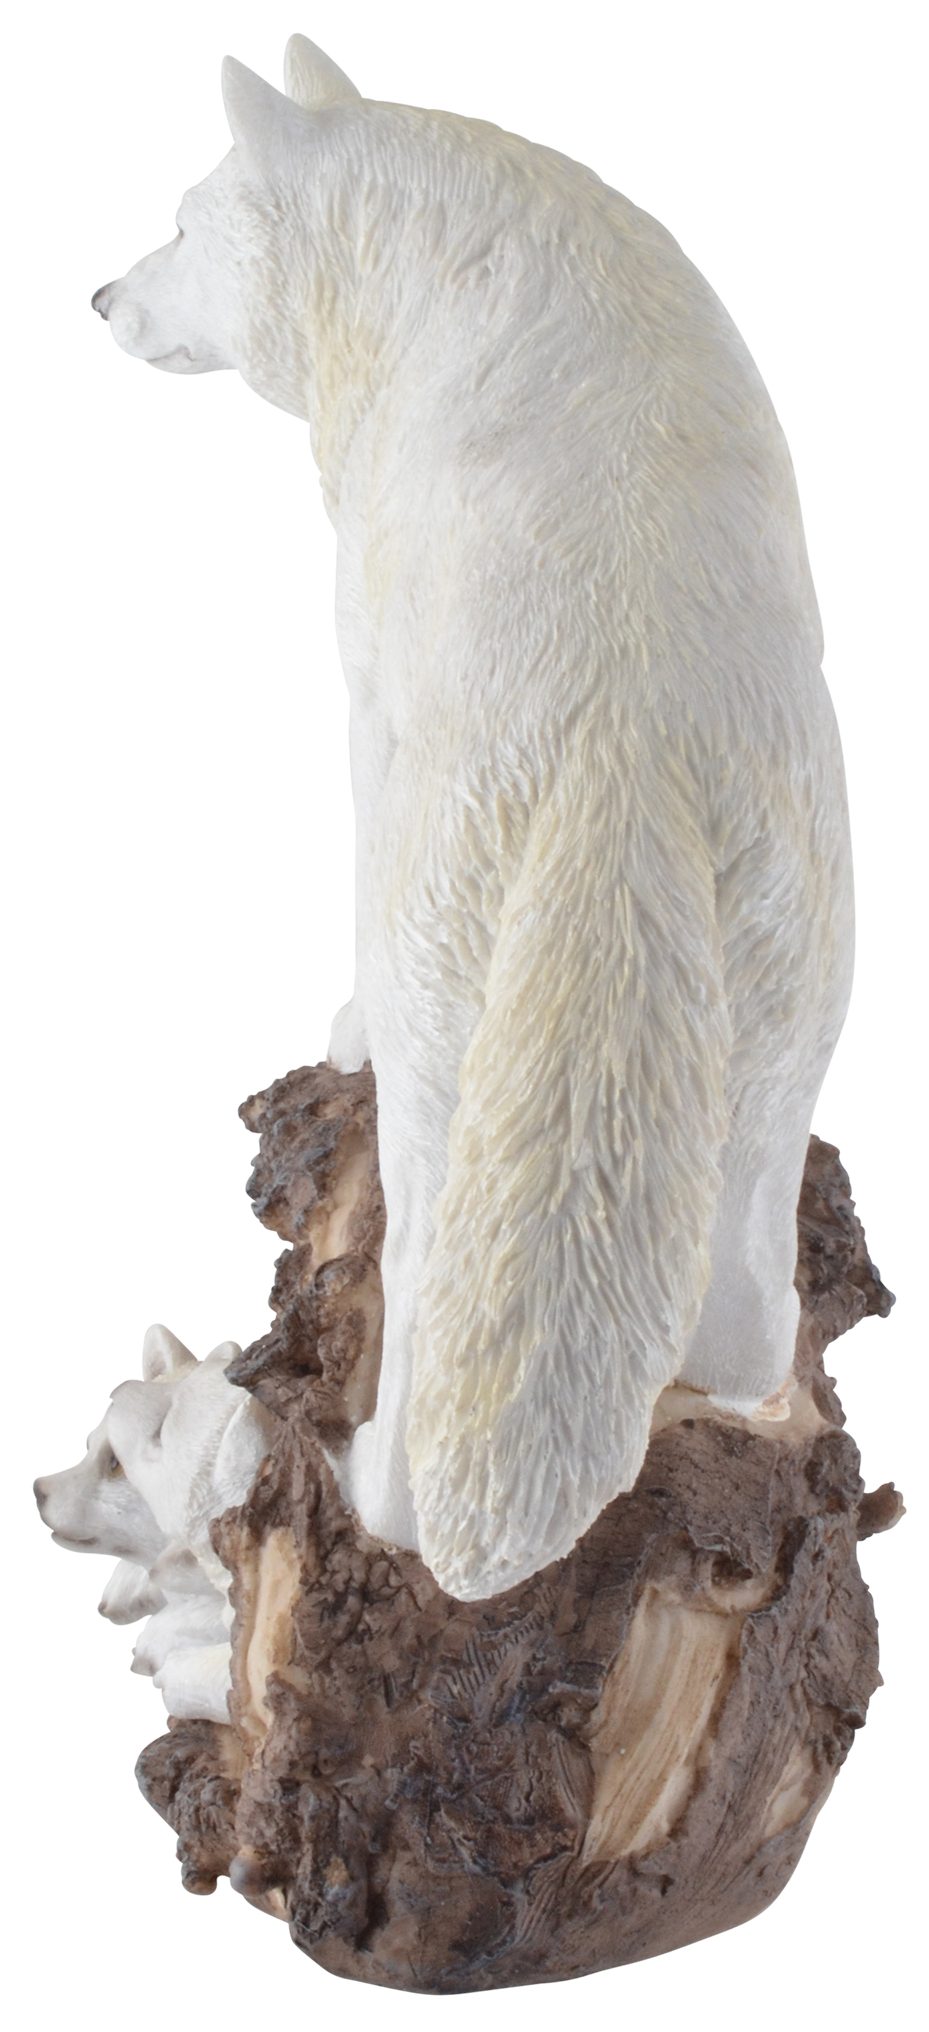 Vogler direct Gmbh Tierfigur cm Schneewolf ca. LxBxH Kunststein, Jungen einem 22x13x26 coloriert, in Baumstamm, zwei handbemalt, mit